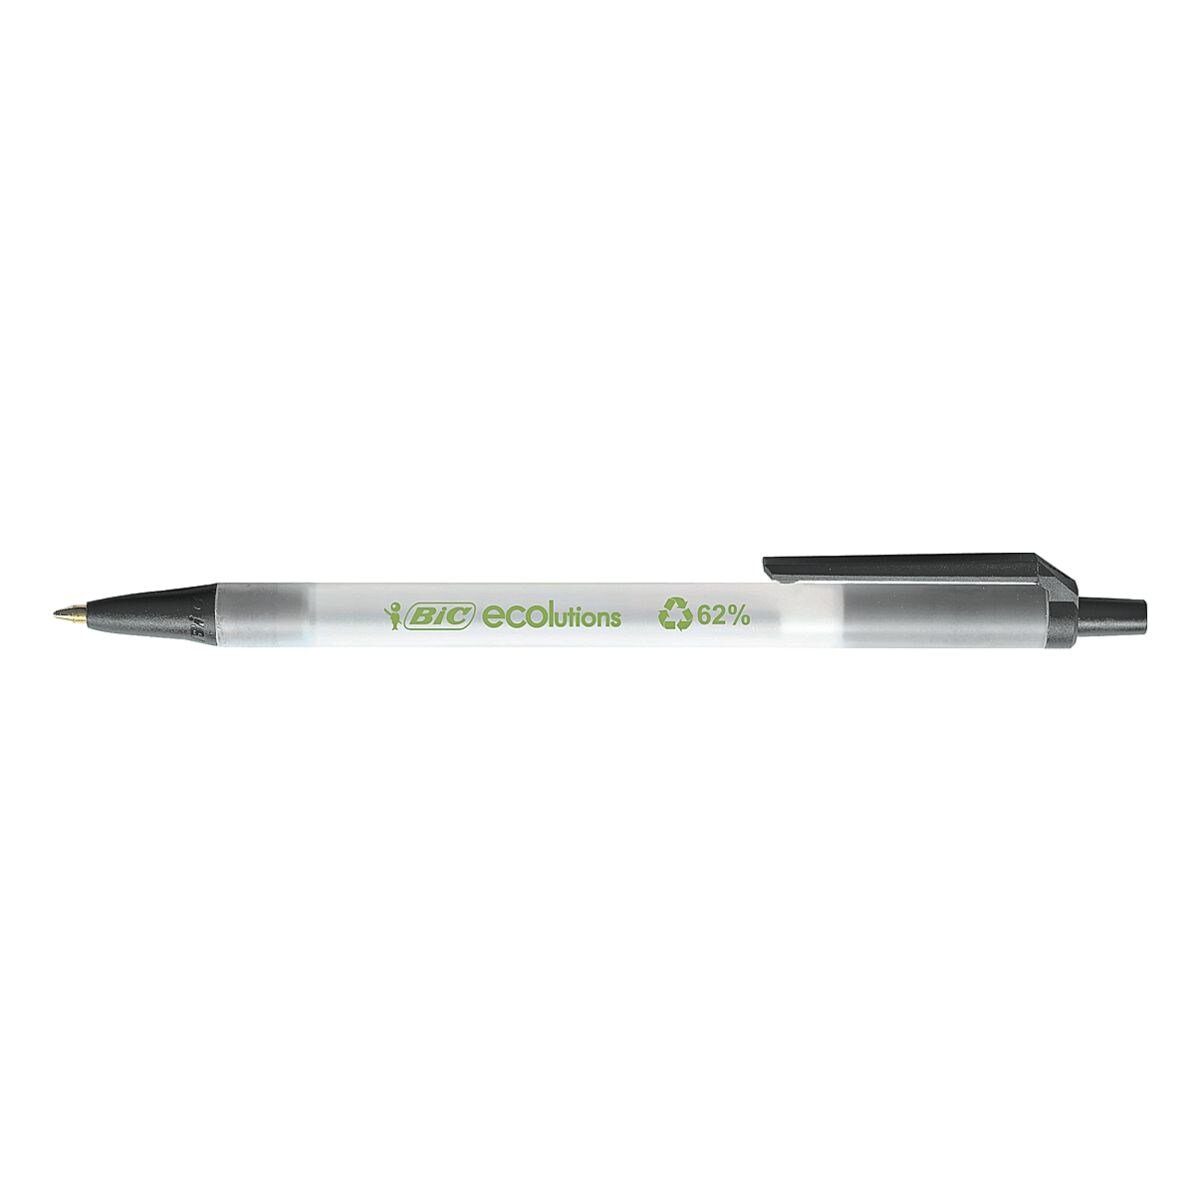 zu Kugelschreiber Material Clic 62% Stic, schwarz/transparent BIC recyceltem aus Ecolutions